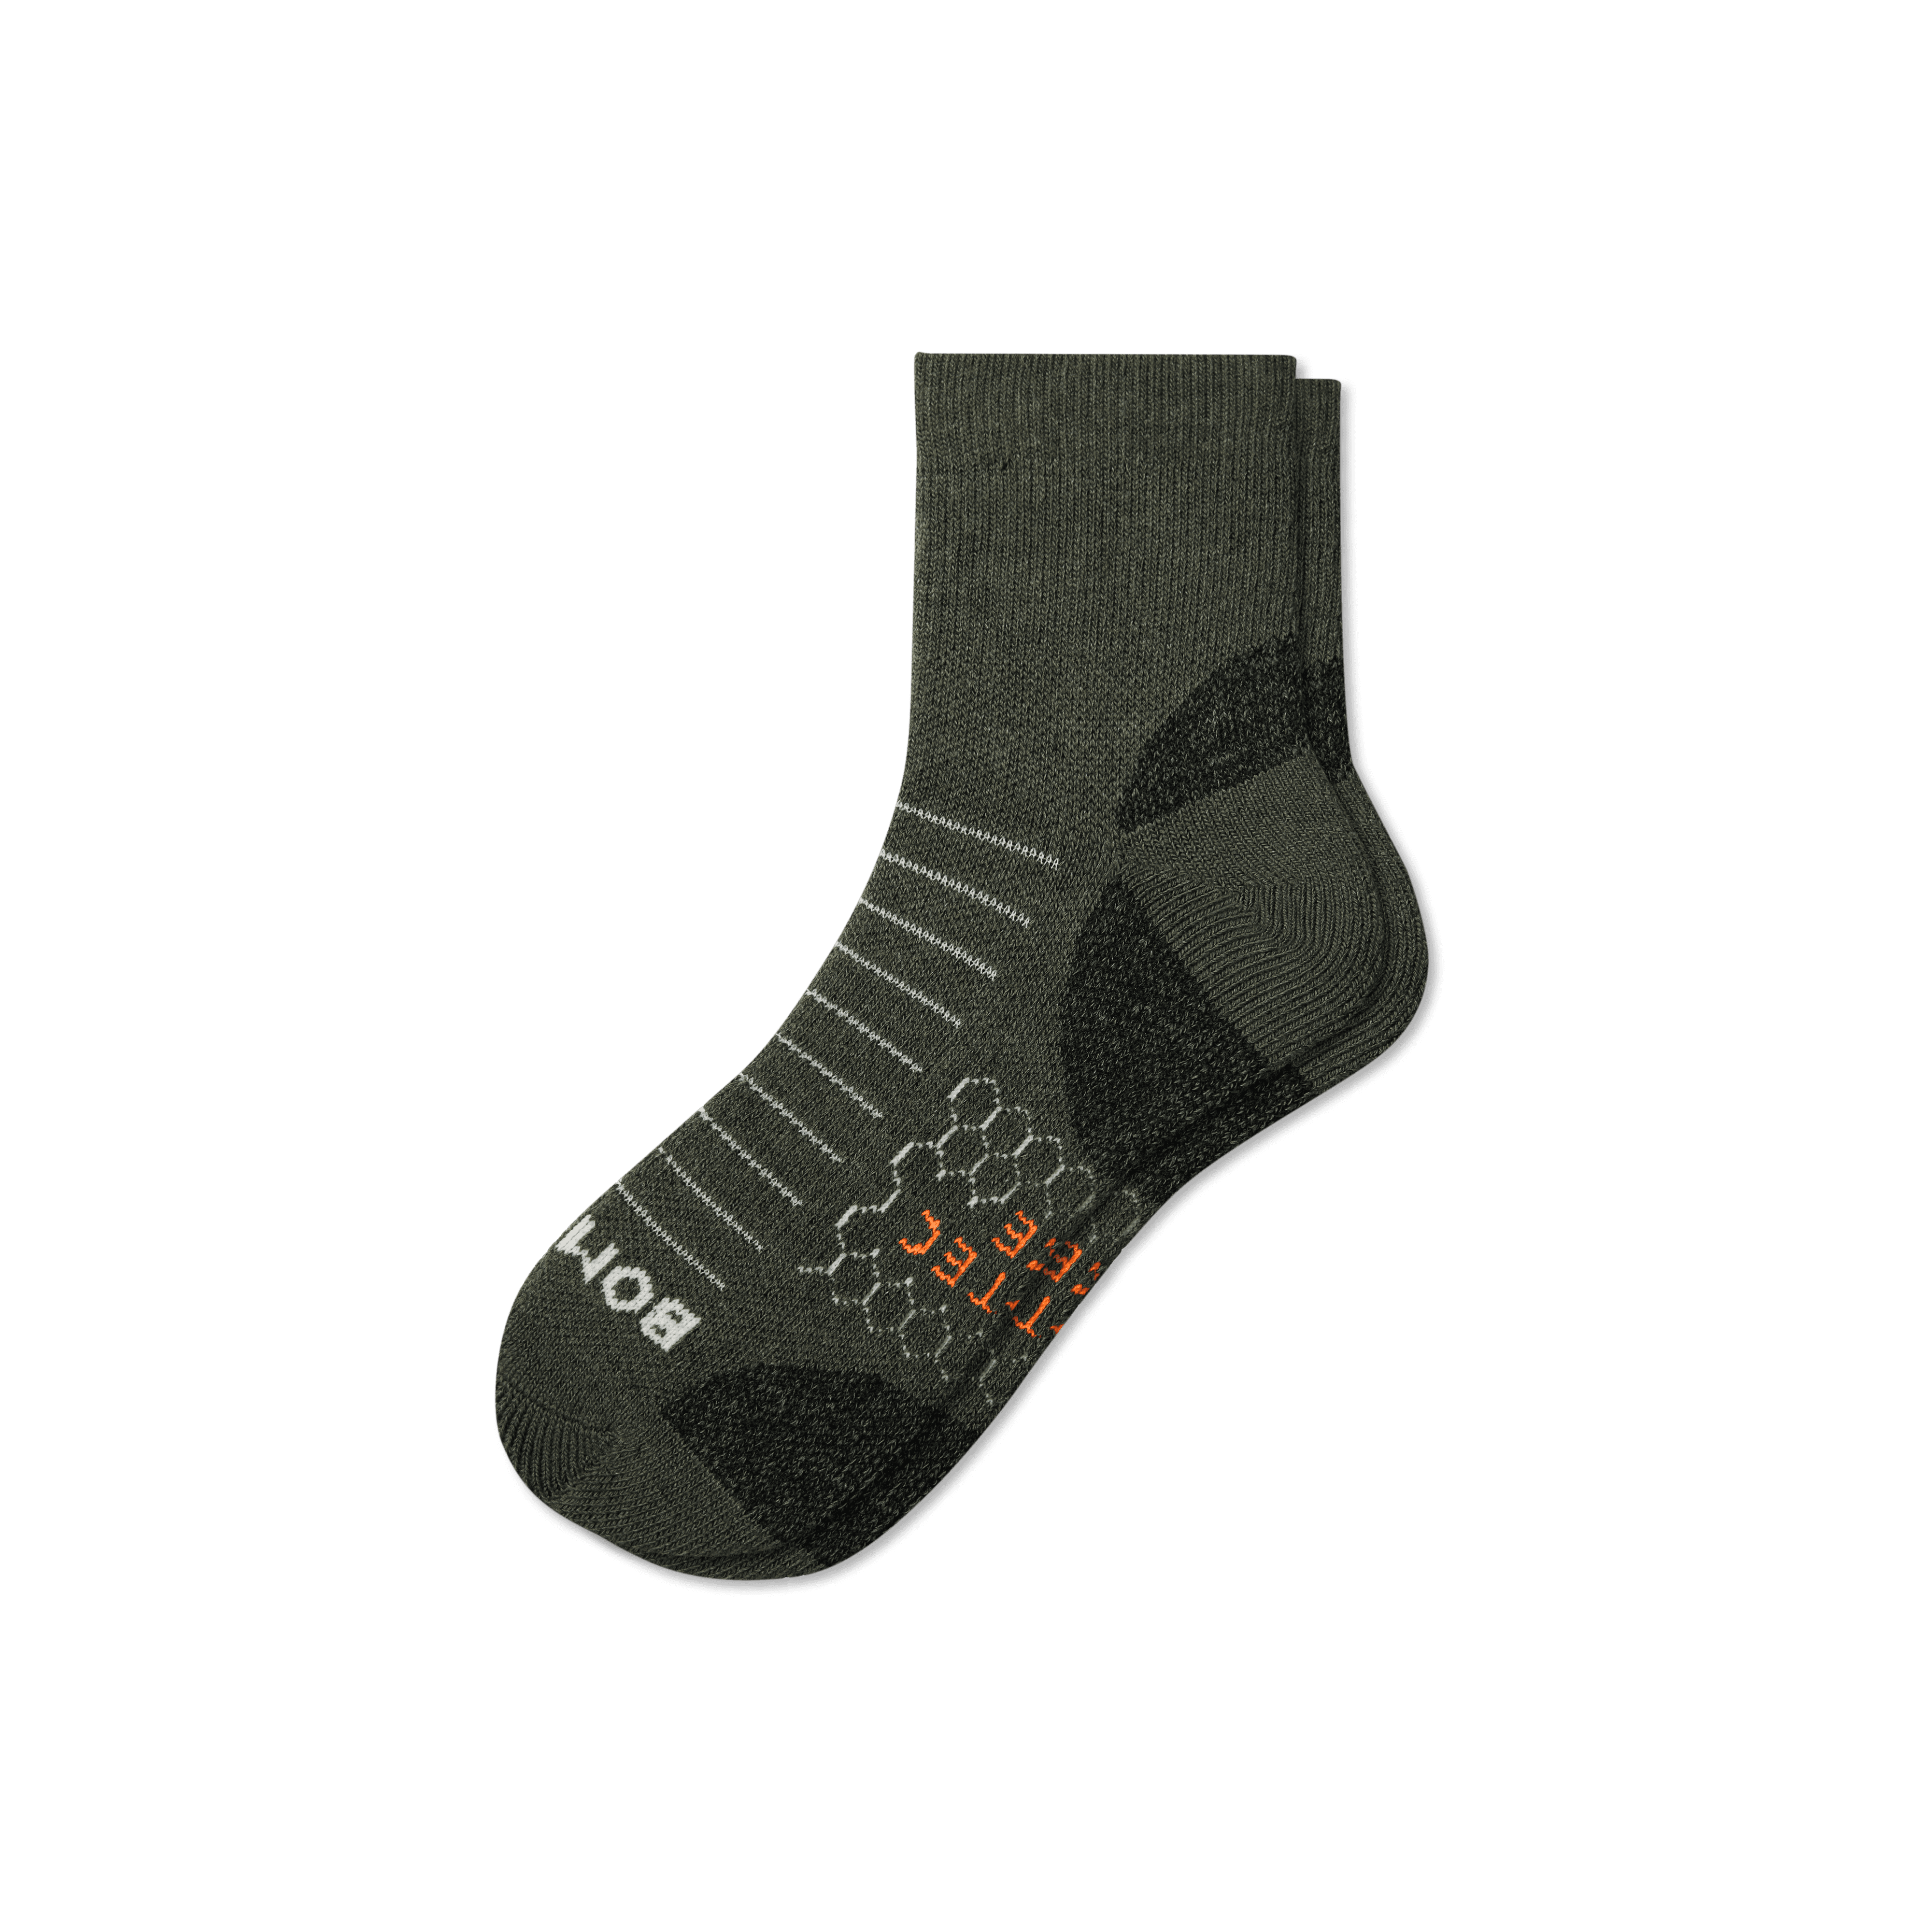 Bombas Hiking Performance Quarter Socks In Dark Olive